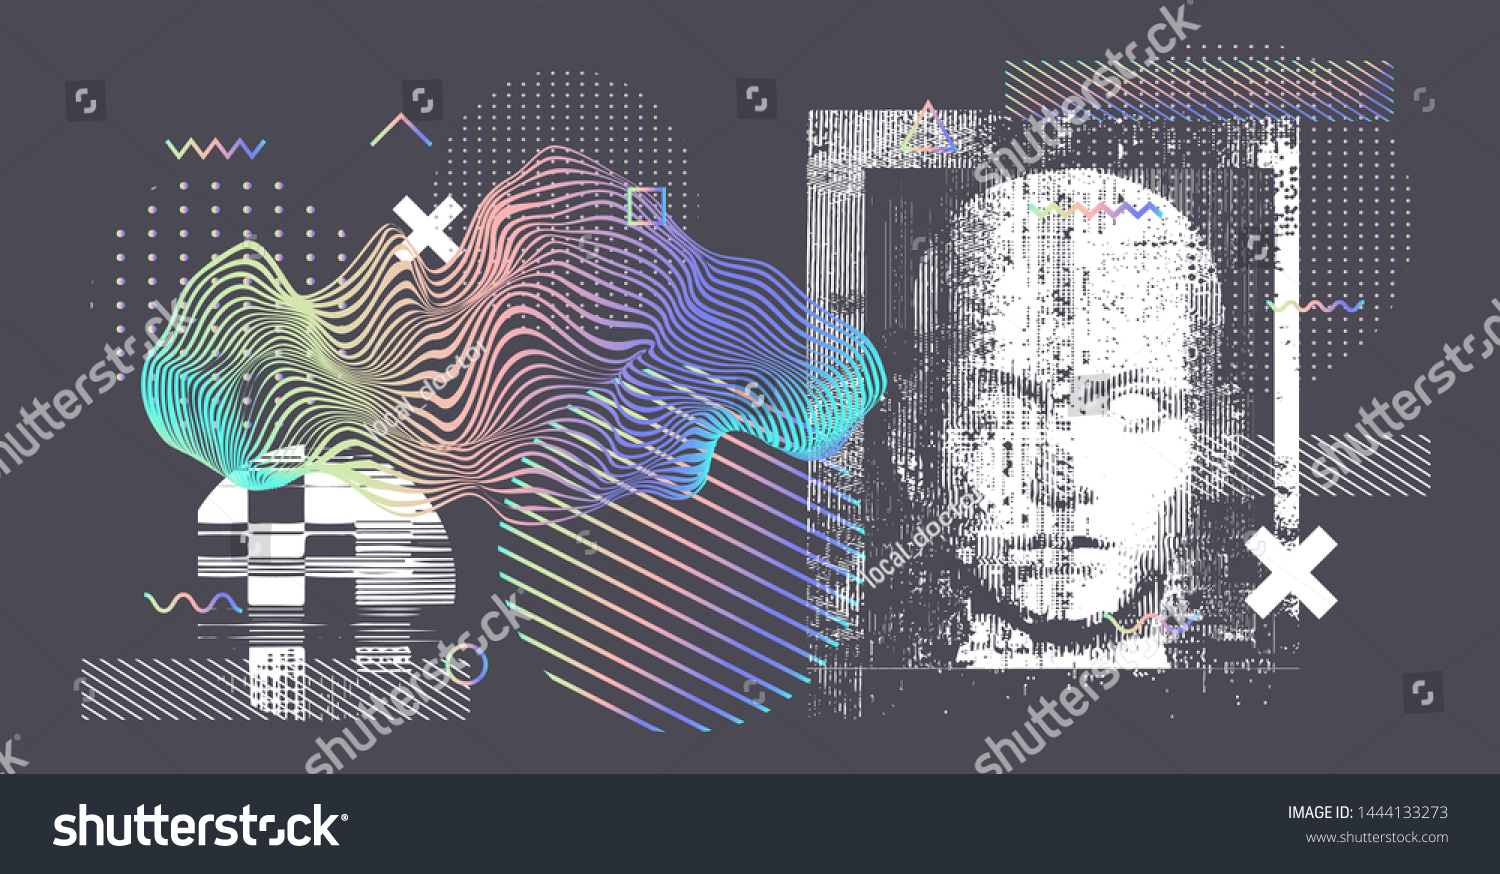 人間のホログラフィックシルエット Ai 人工知能 Vr 仮想現実 Deep Learning Face Recognitionシステムのコンセプト画像 サイバーパンクスタイルのベクターイラスト のベクター画像素材 ロイヤリティフリー